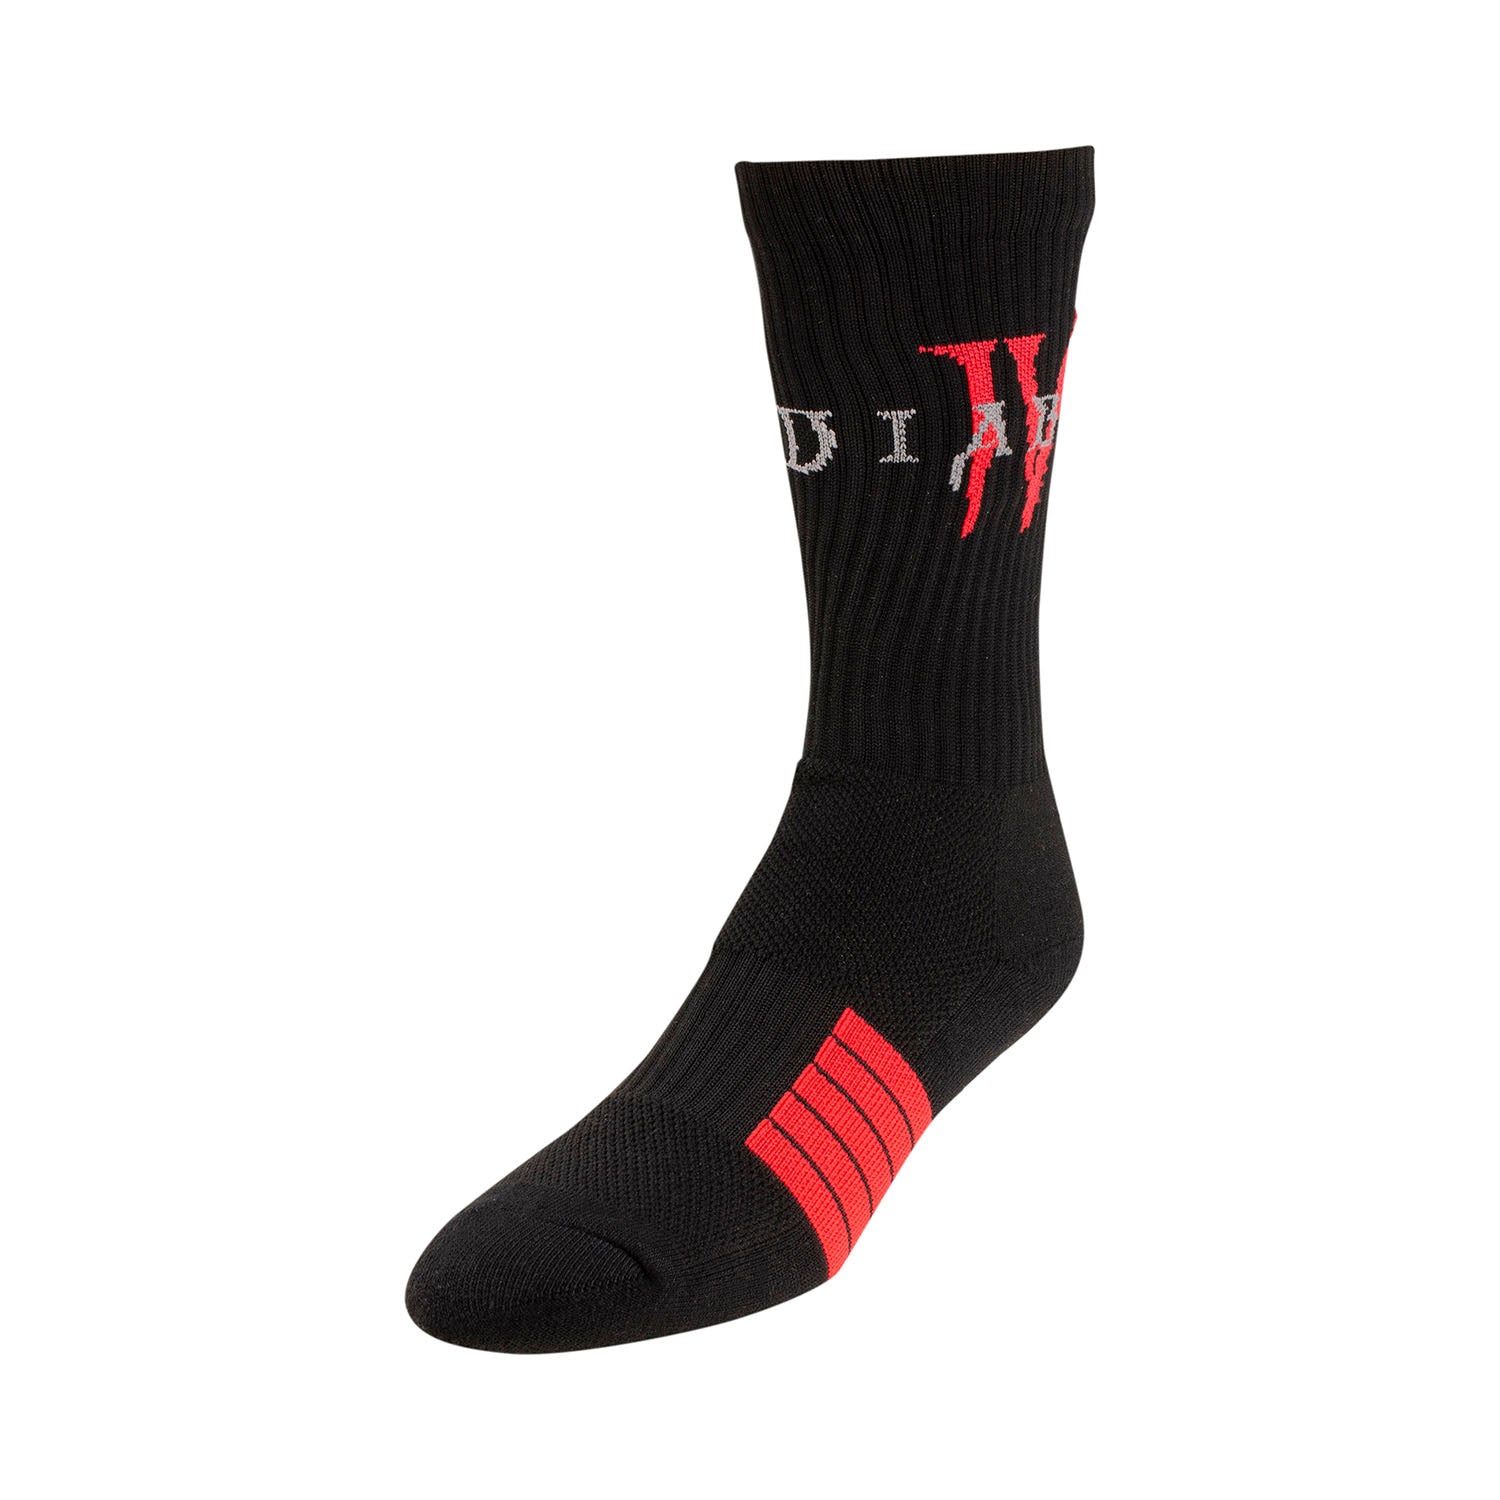 Diablo IV Logo Socks in Black - Left View